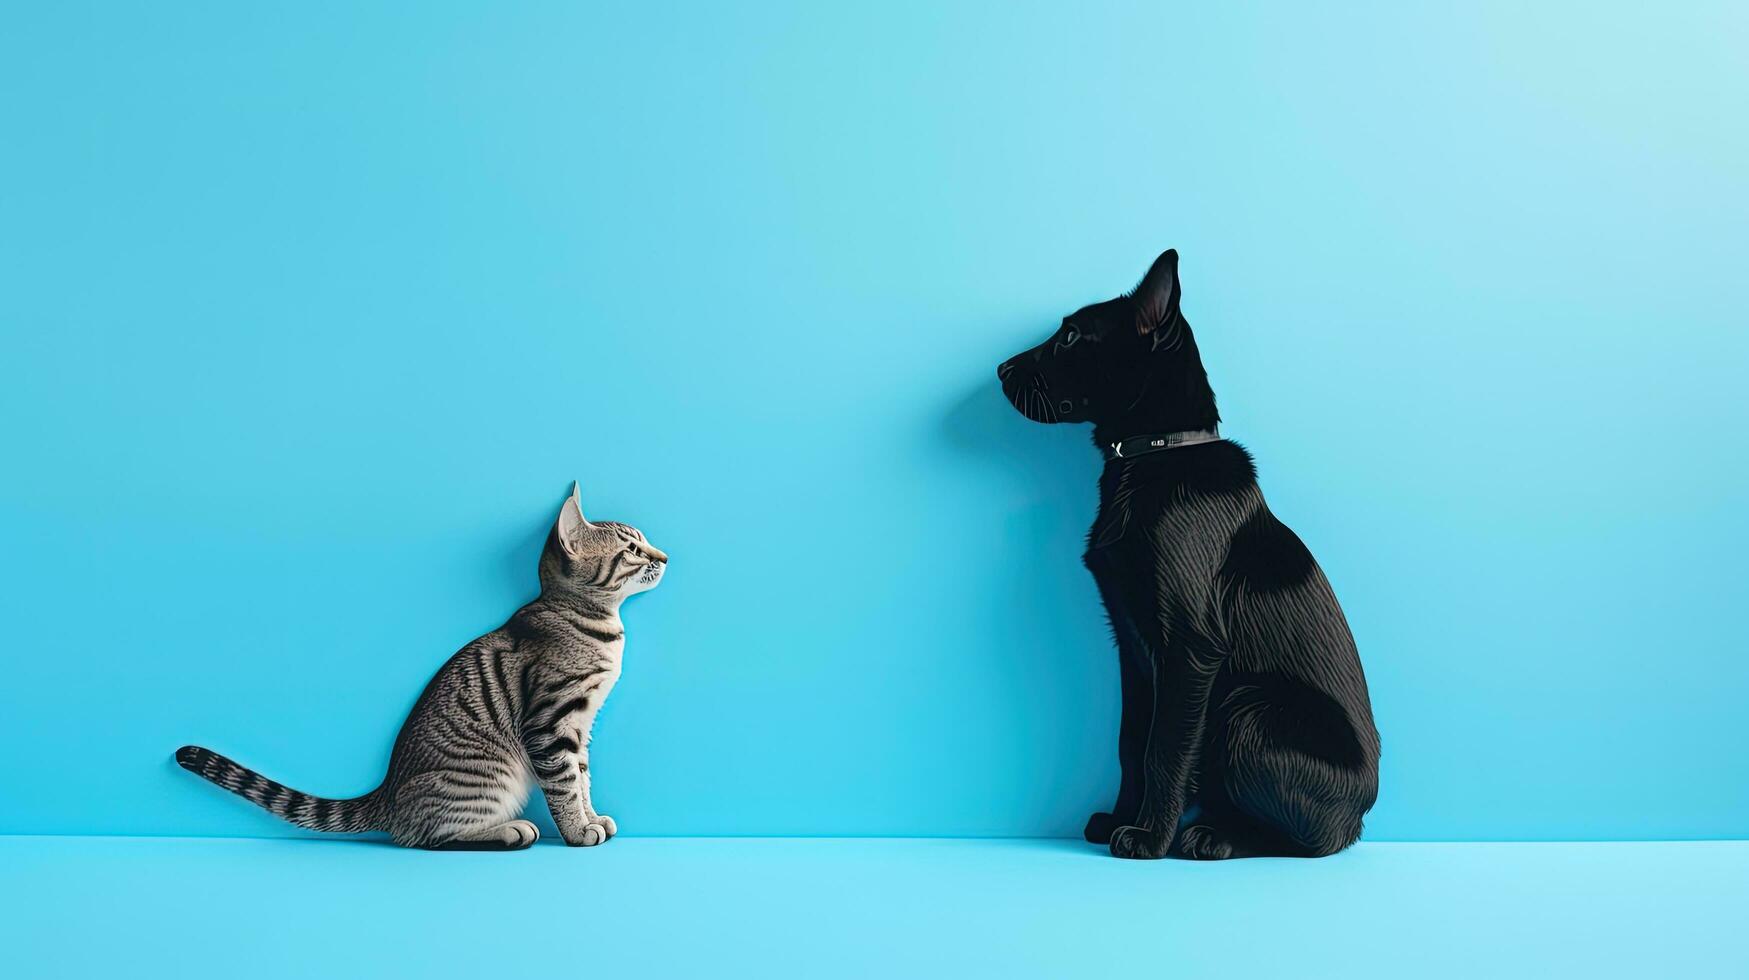 gato y perro papel recortes en azul antecedentes adecuado para veterinario o animal cuidado. silueta concepto foto